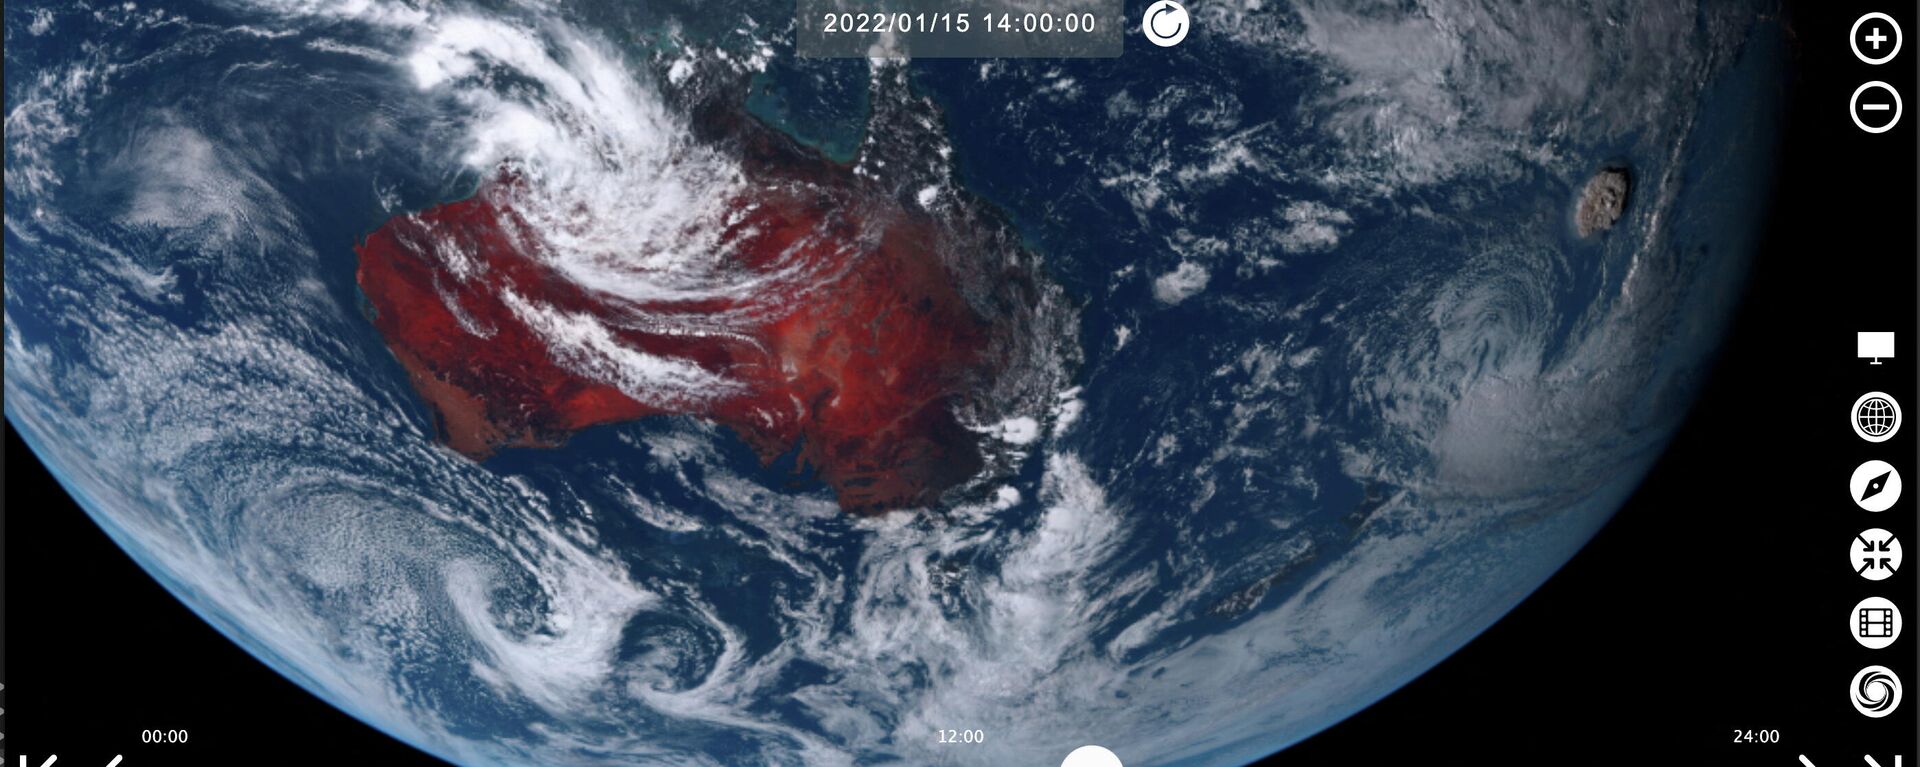 Vulcão submarino Hunga Tonga-Hunga Ha'apai entrou em erupção nesta imagem de satélite tirada pelo Himawari-8, um satélite meteorológico japonês operado pela Agência Meteorológica do Japão, em 15 de janeiro de 2022 - Sputnik Brasil, 1920, 17.01.2022